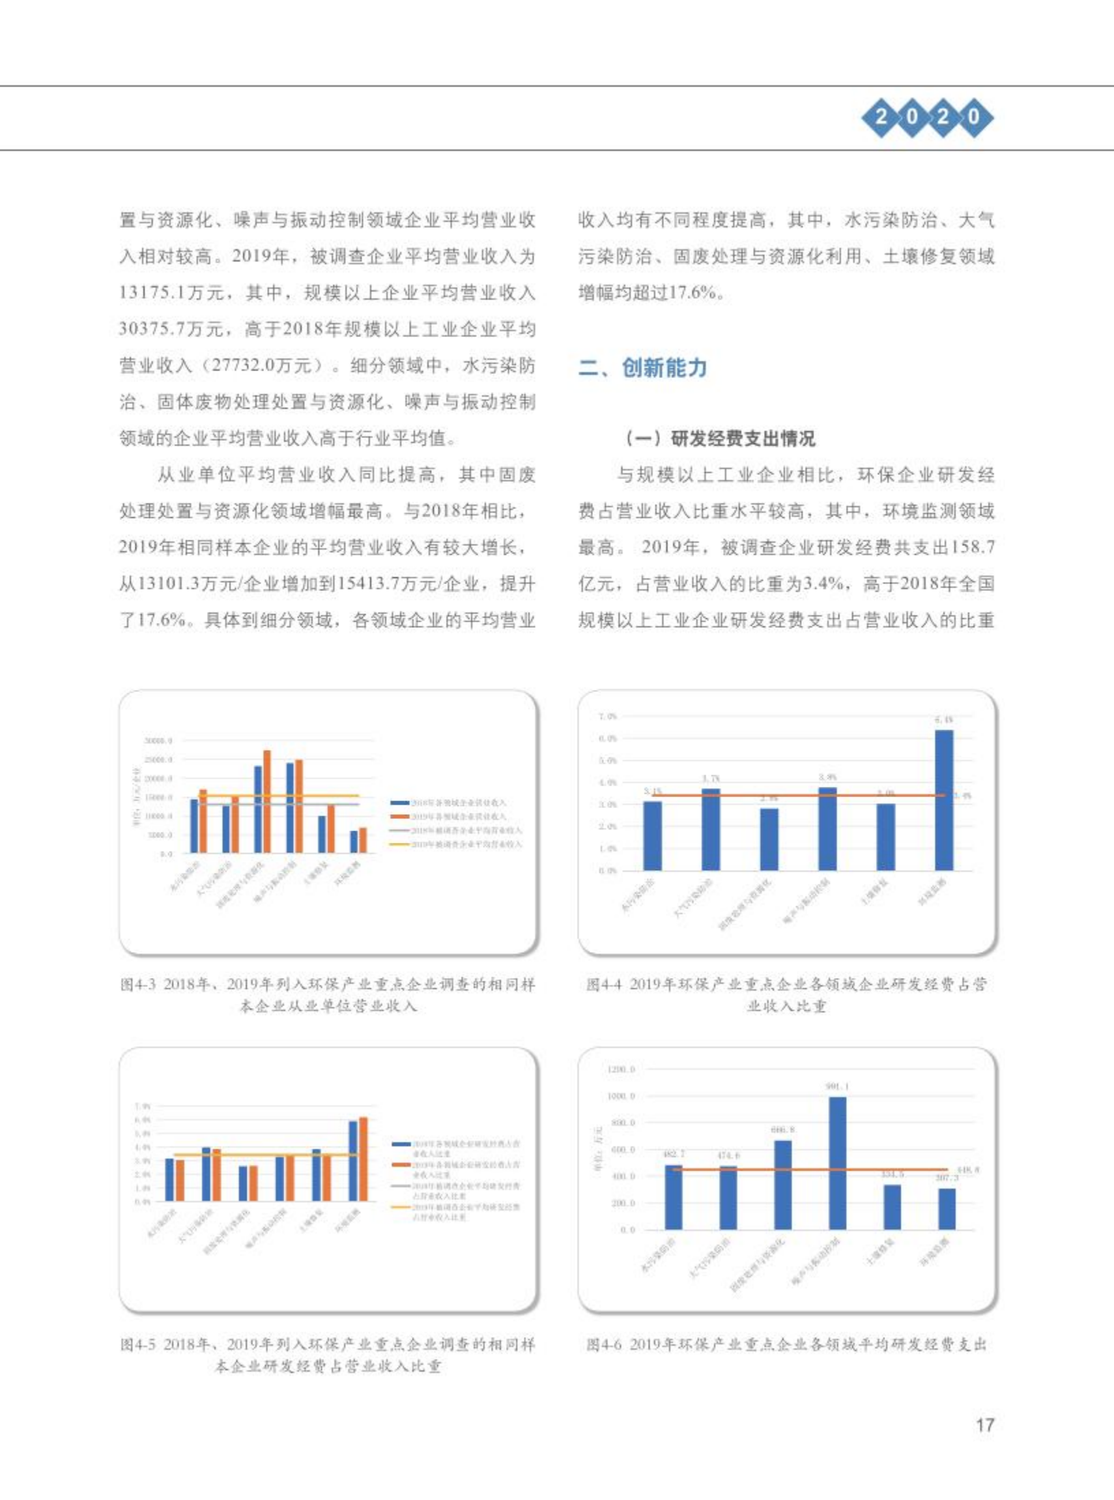 【2020】中国环保产业发展状况报告_18.png